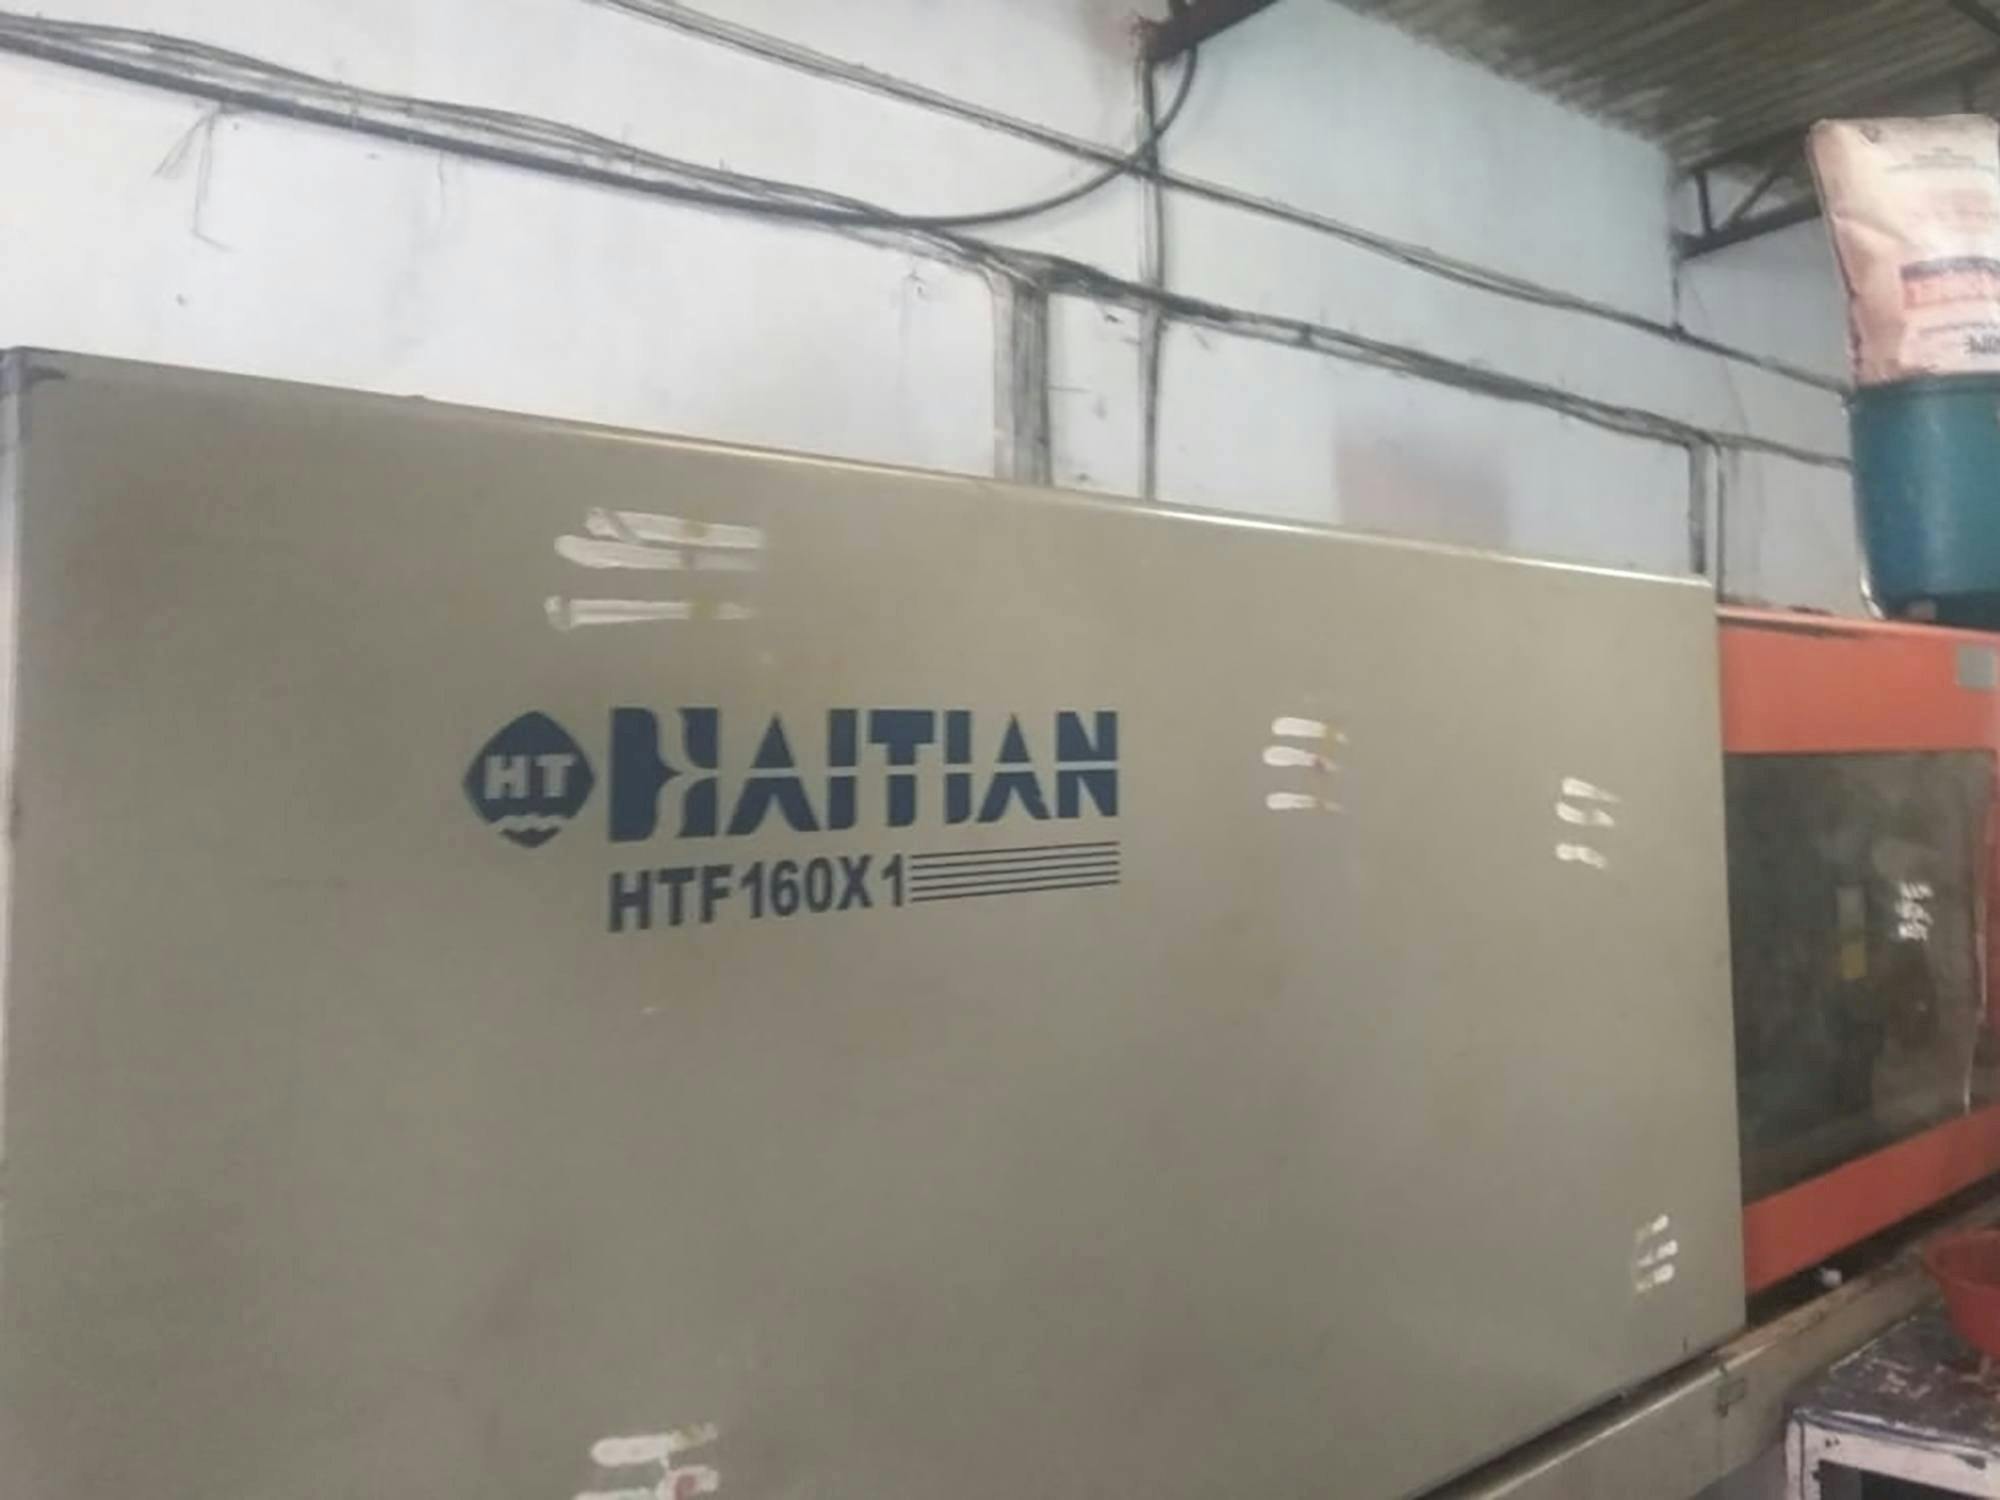 Čelní pohled  na HAITIAN HTF160X1 stroj